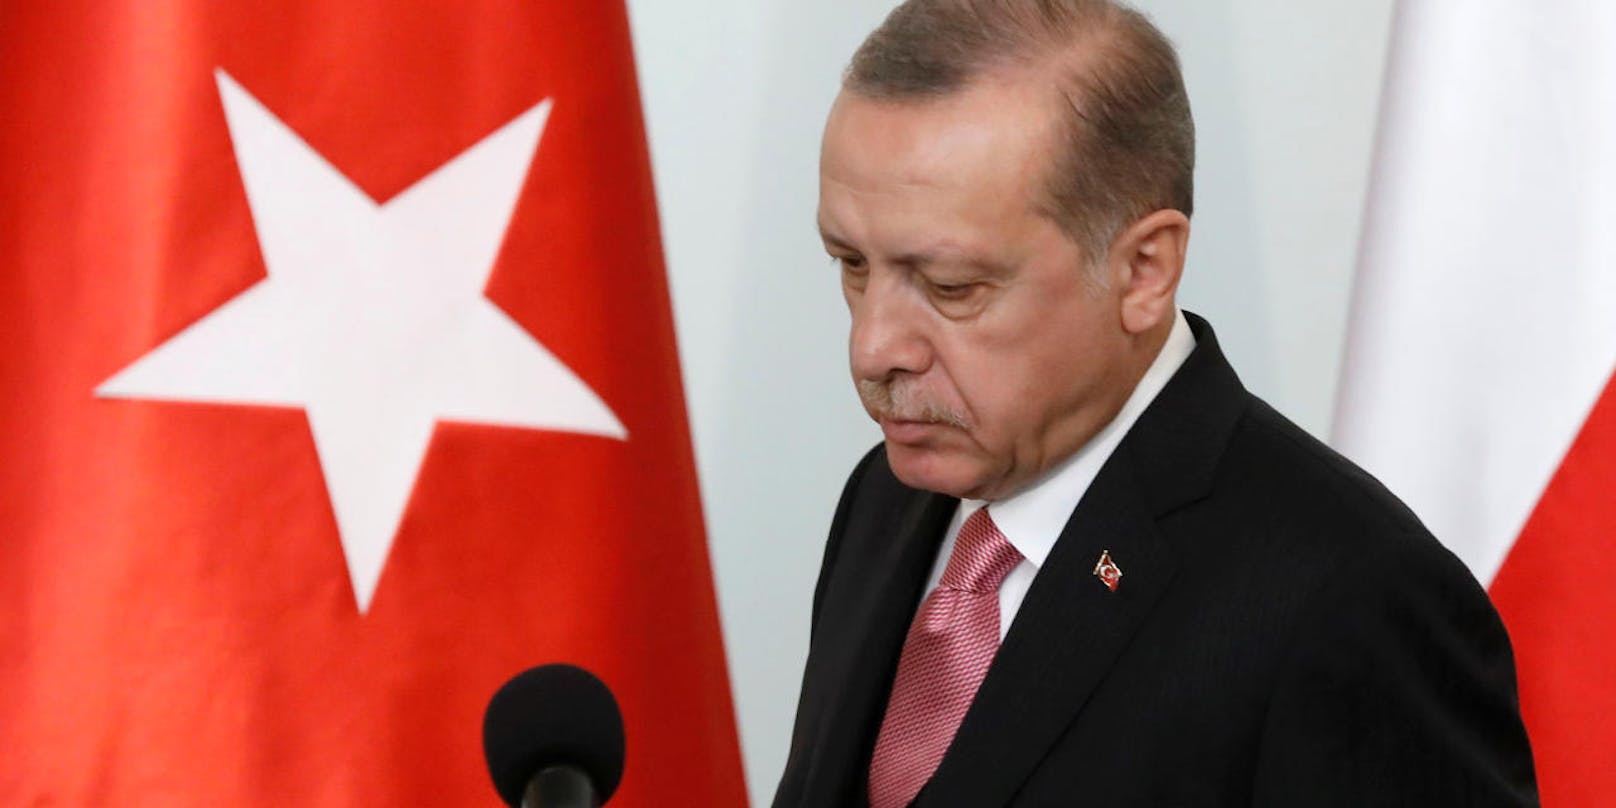 Der türkische Staatschef Recep Tayyip Erdogan fordert härteres Vorgehen gegen pro-kurdische Vereine.